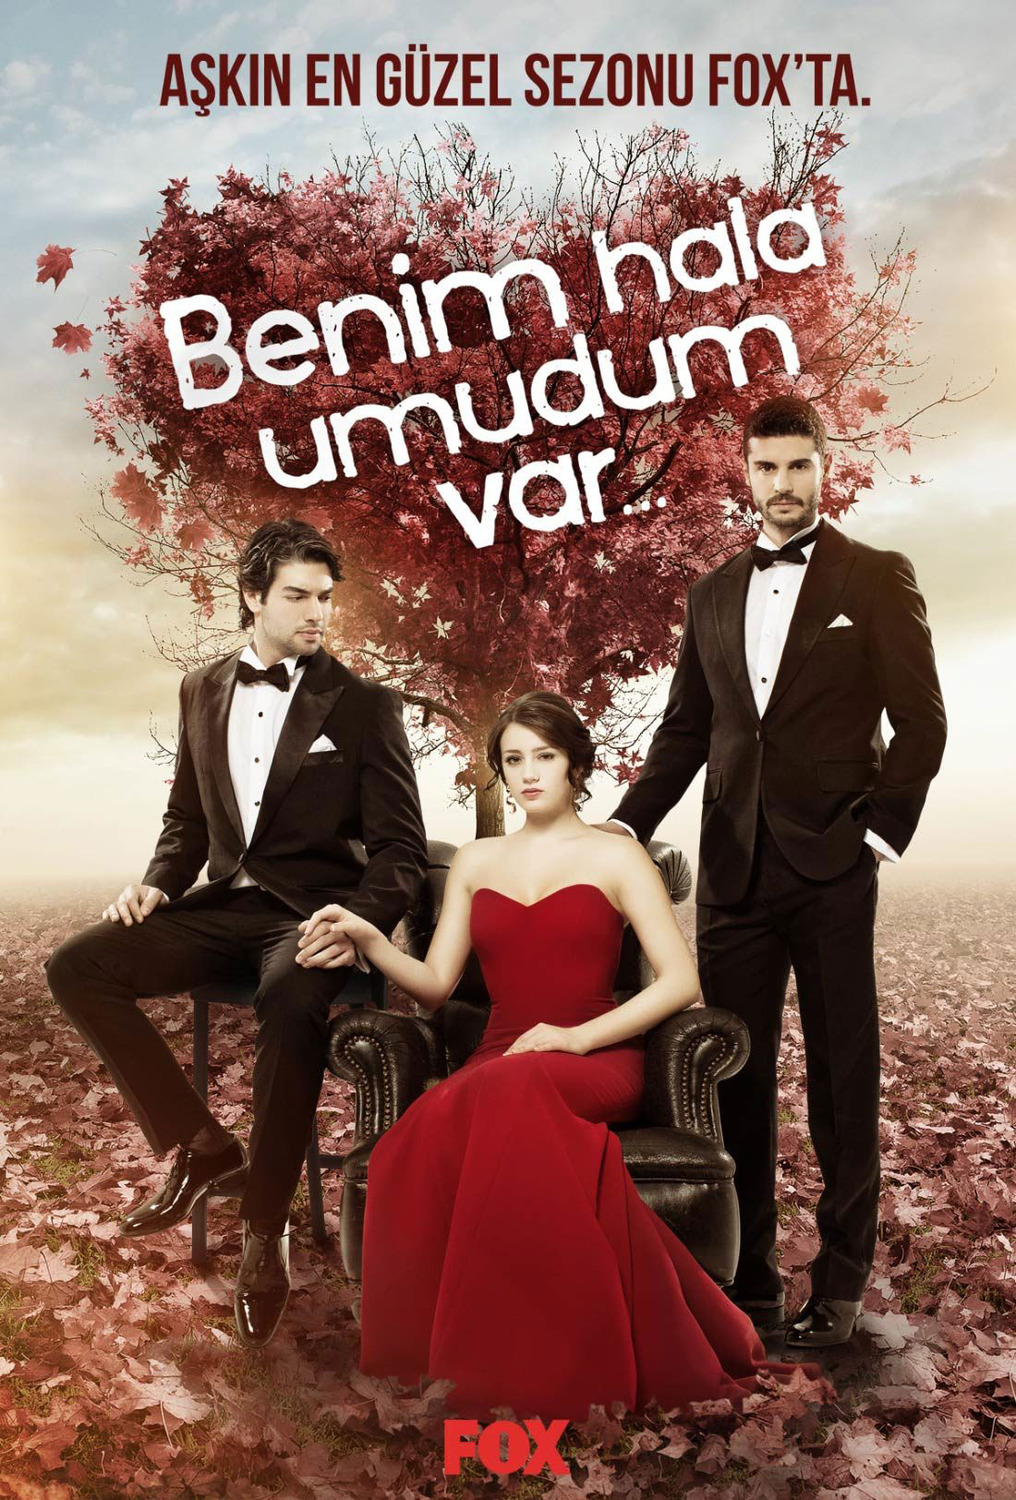 Extra Large TV Poster Image for Benim Hala Umudum Var (#1 of 2)